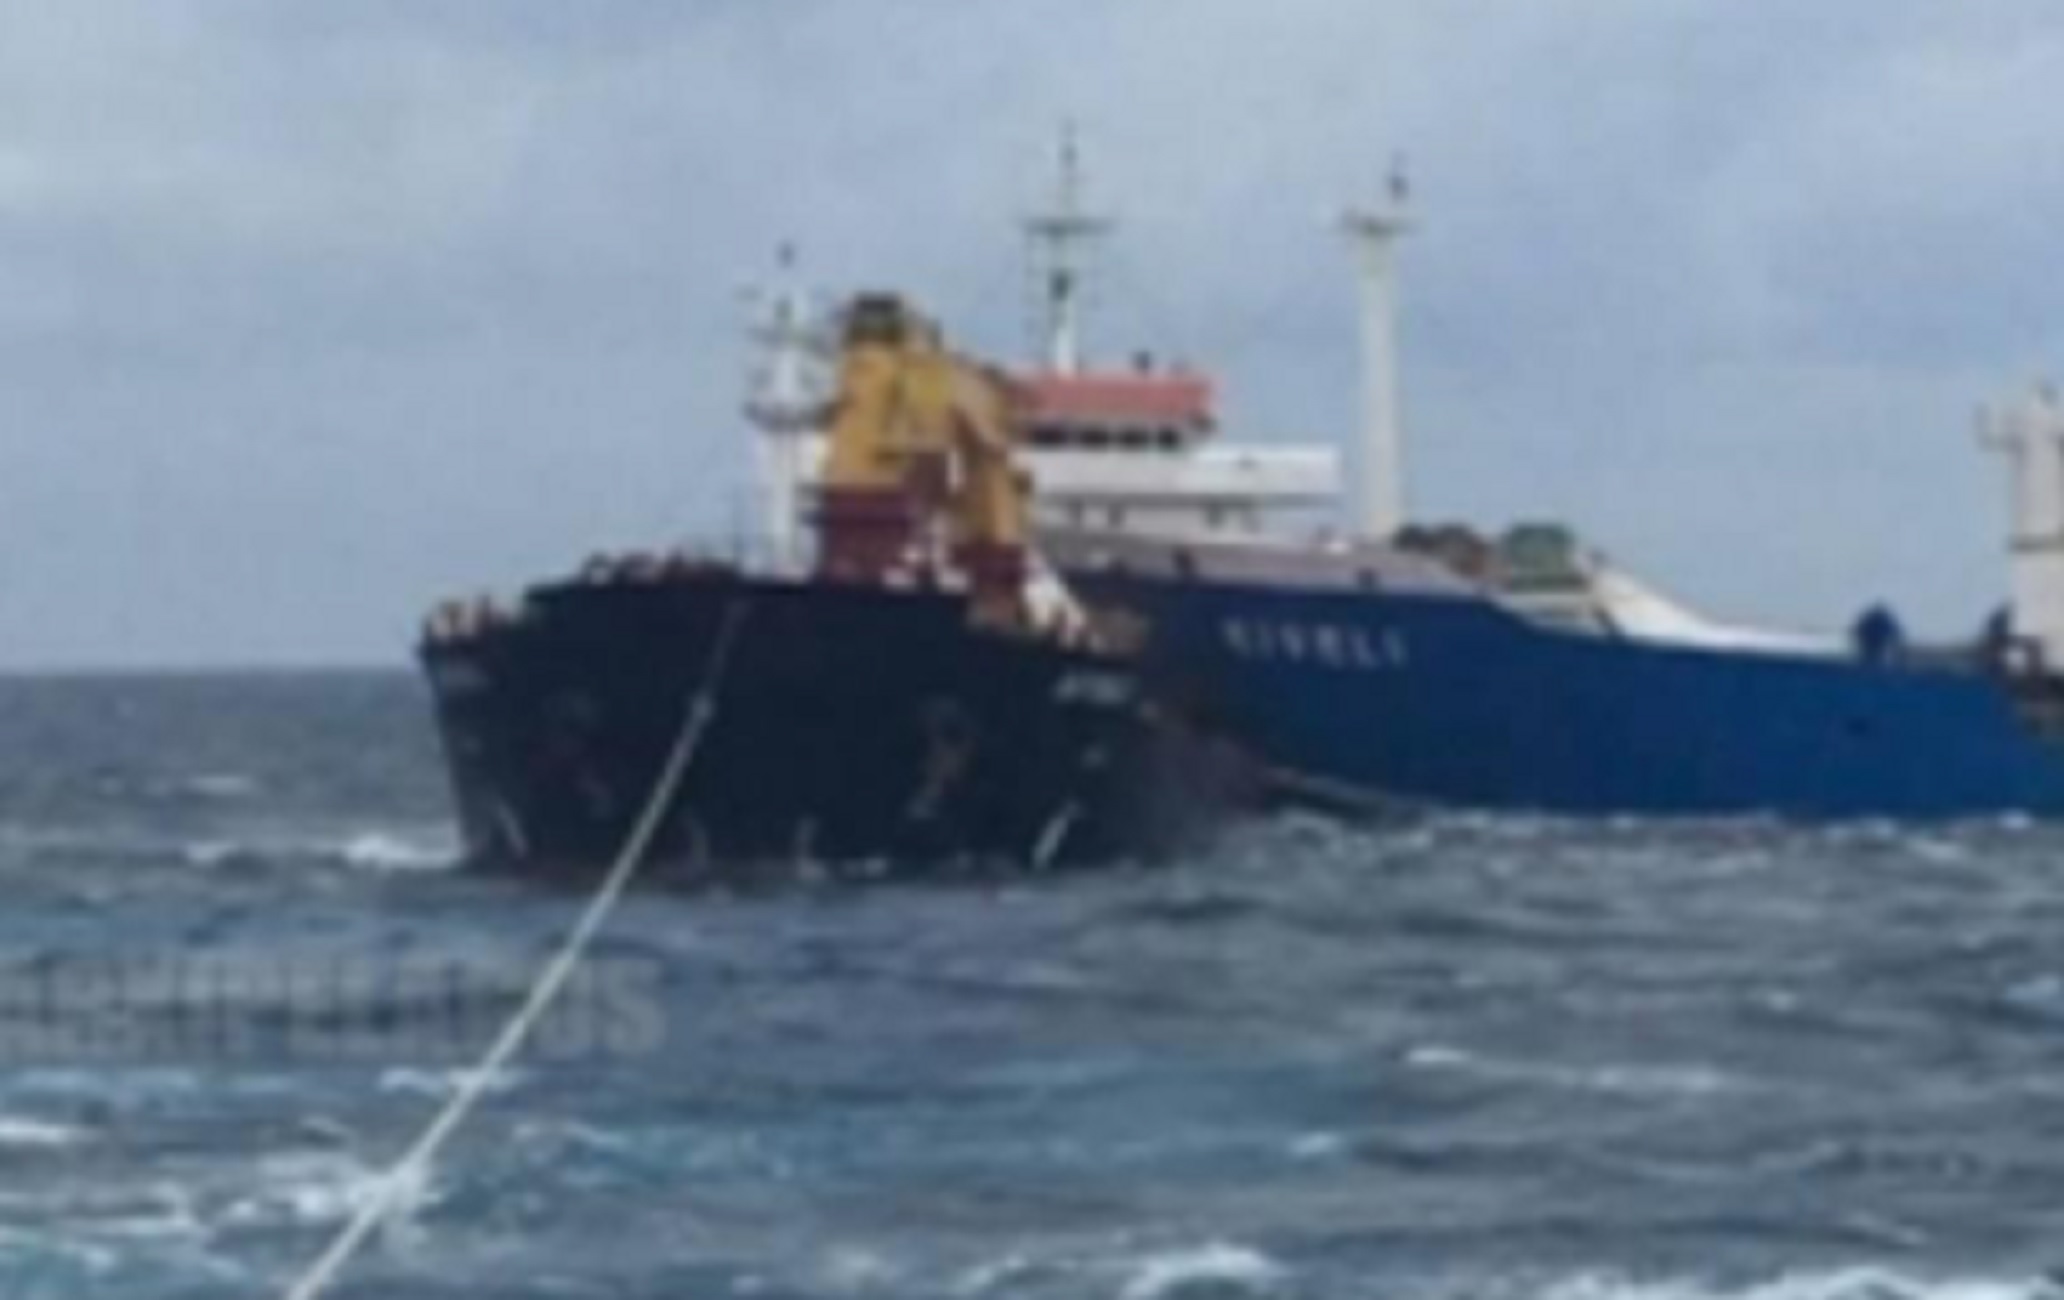 Κύθηρα: Έτσι αποκολλήθηκαν τα δύο φορτηγά πλοία που συγκρούστηκαν μεταξύ τους (pics)